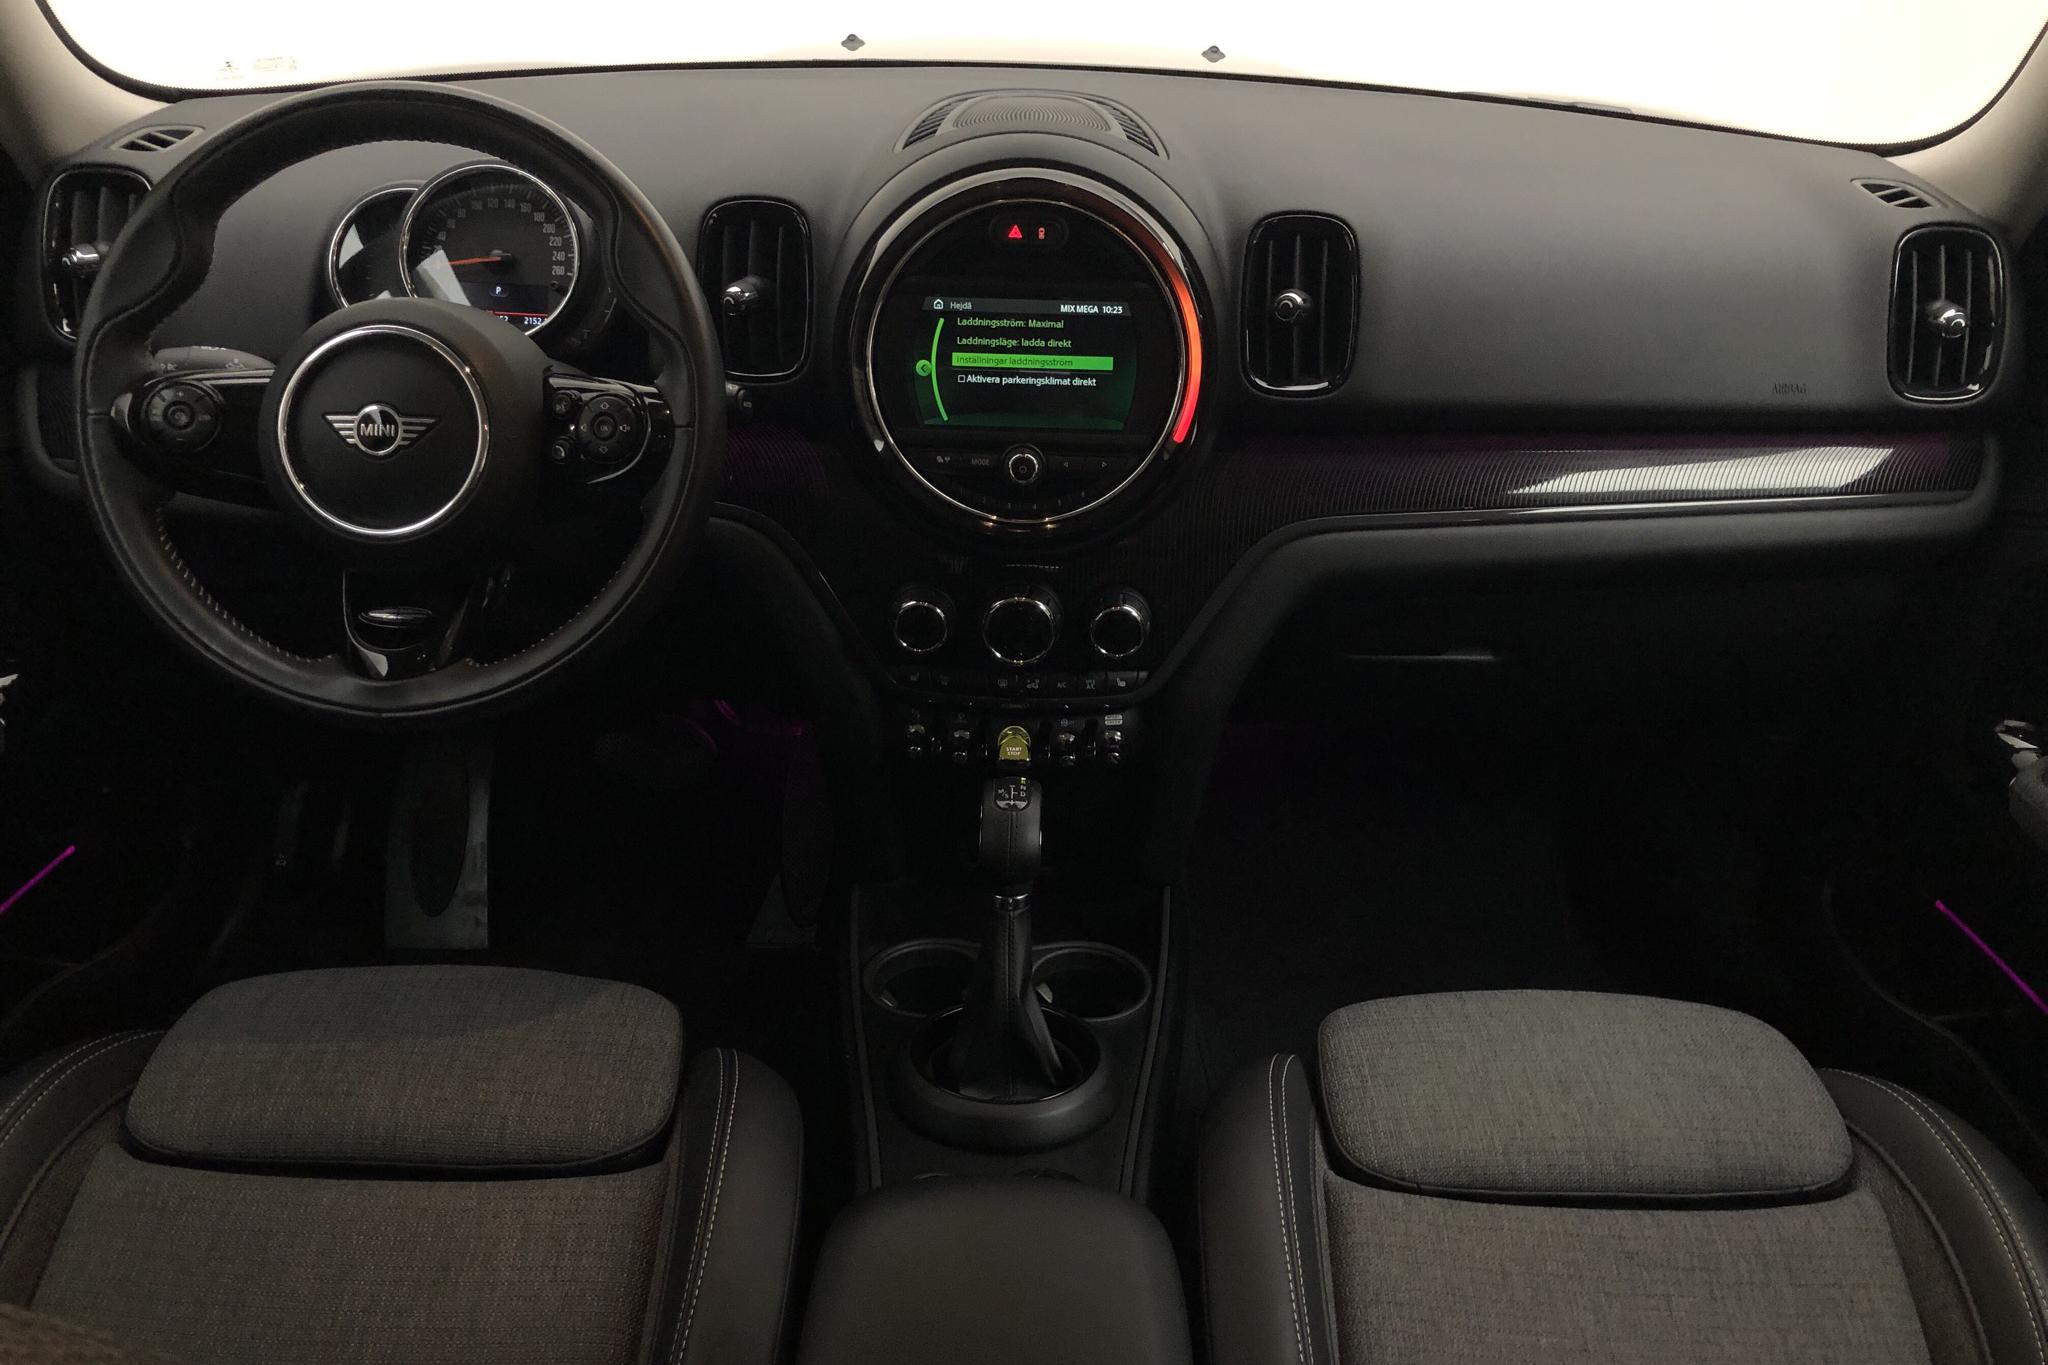 MINI Cooper S E ALL4 Countryman, F60 (224hk) - 62 150 km - Automatic - gray - 2019